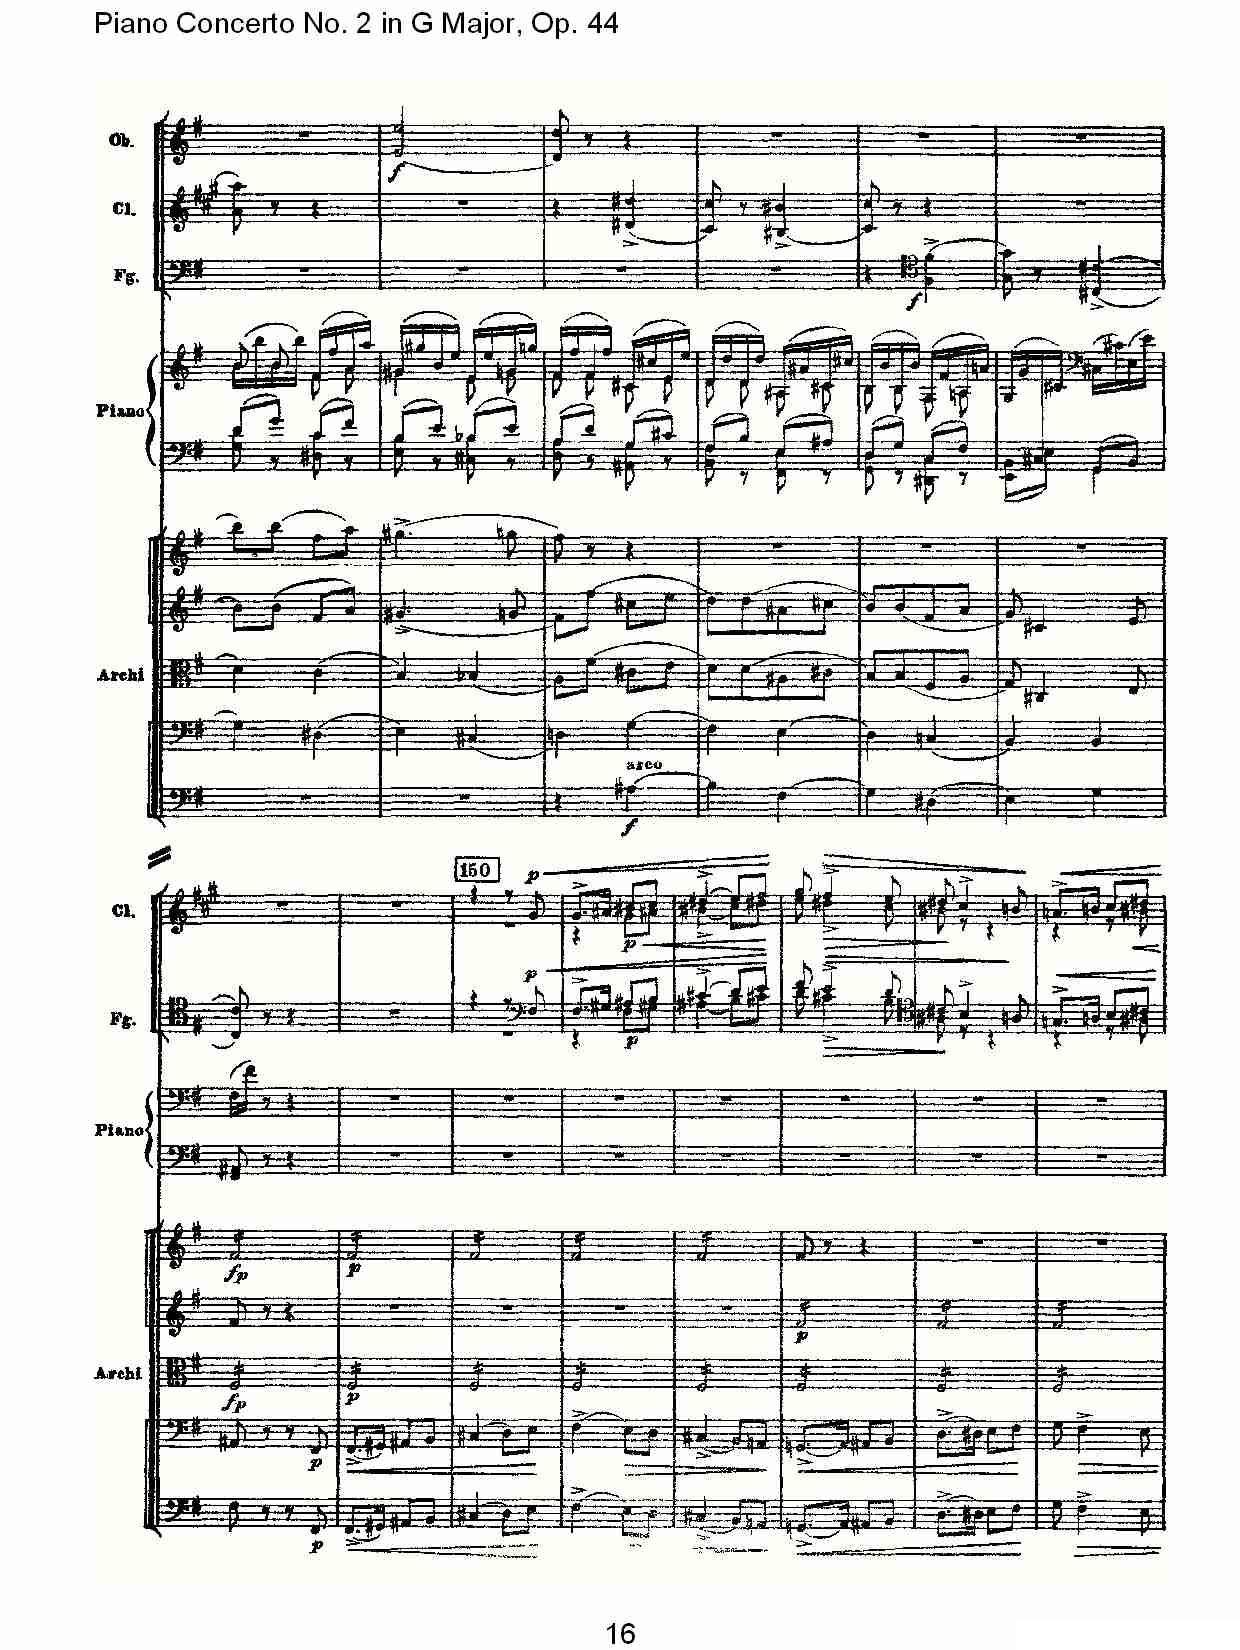 G大调第二钢琴协奏曲, Op.44第三乐章（一）钢琴曲谱（图16）